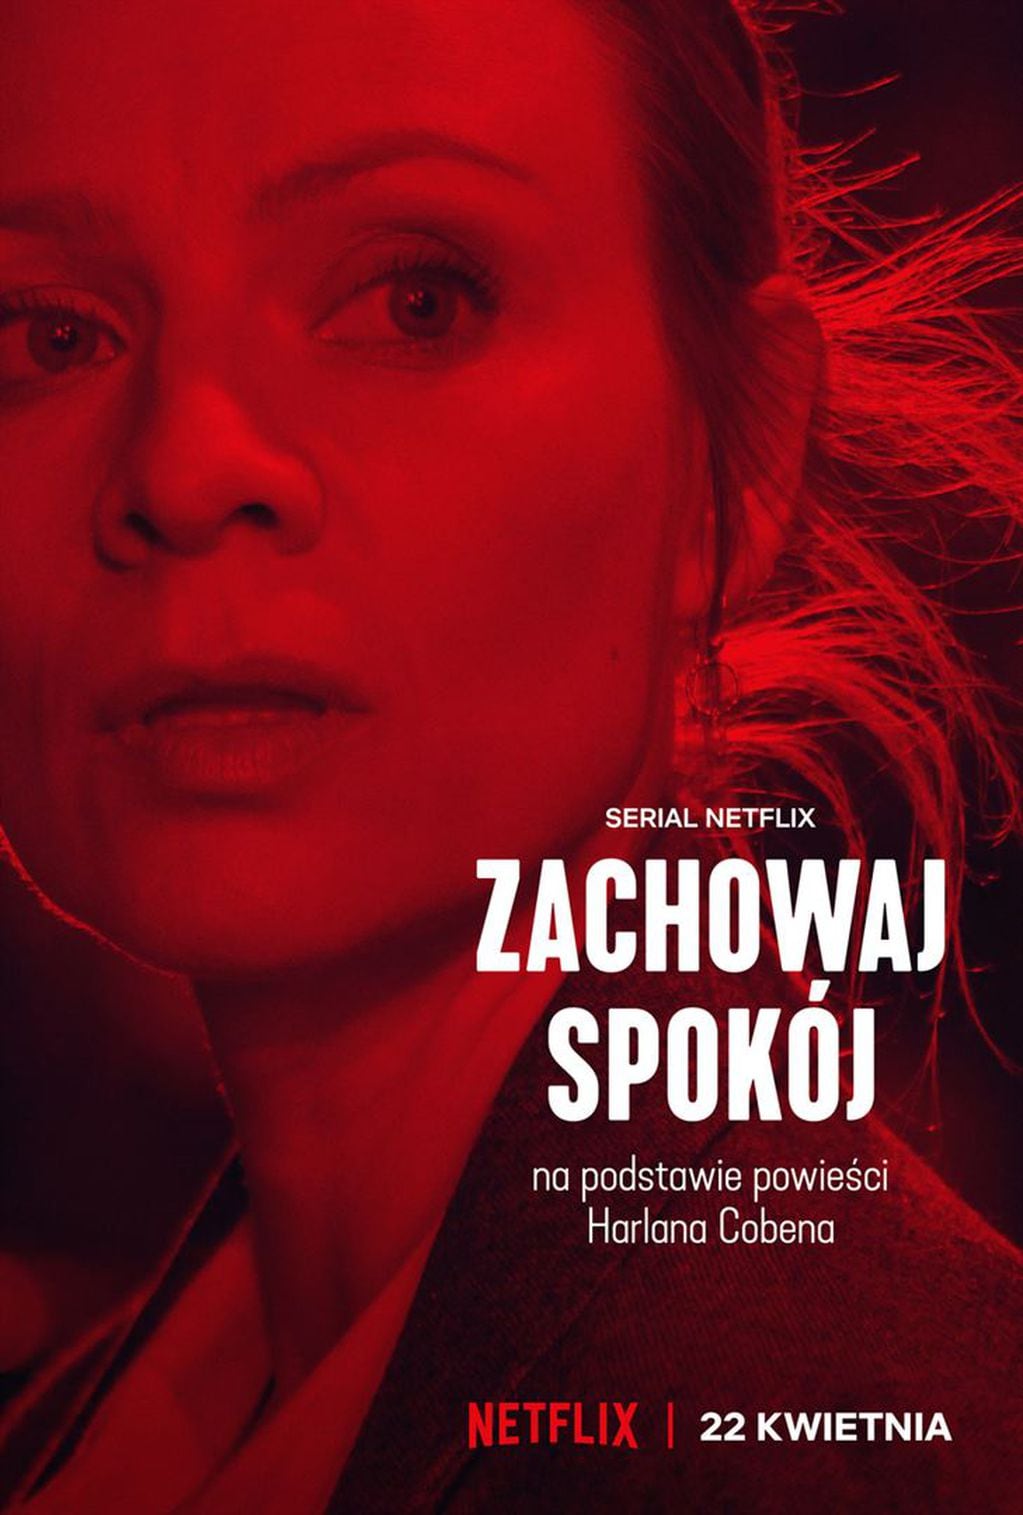 "Ni una palabra" la nueva miniserie polaca de Netflix.